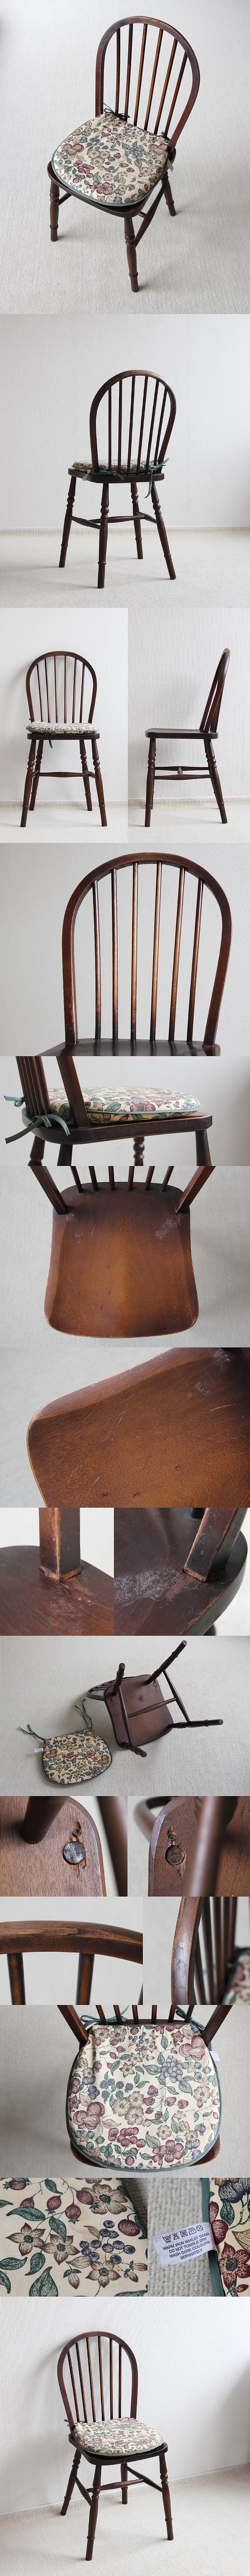 イギリス ヴィンテージ キッチンチェア 英国 木製椅子 インテリア 家具「フープバックチェア」P-332